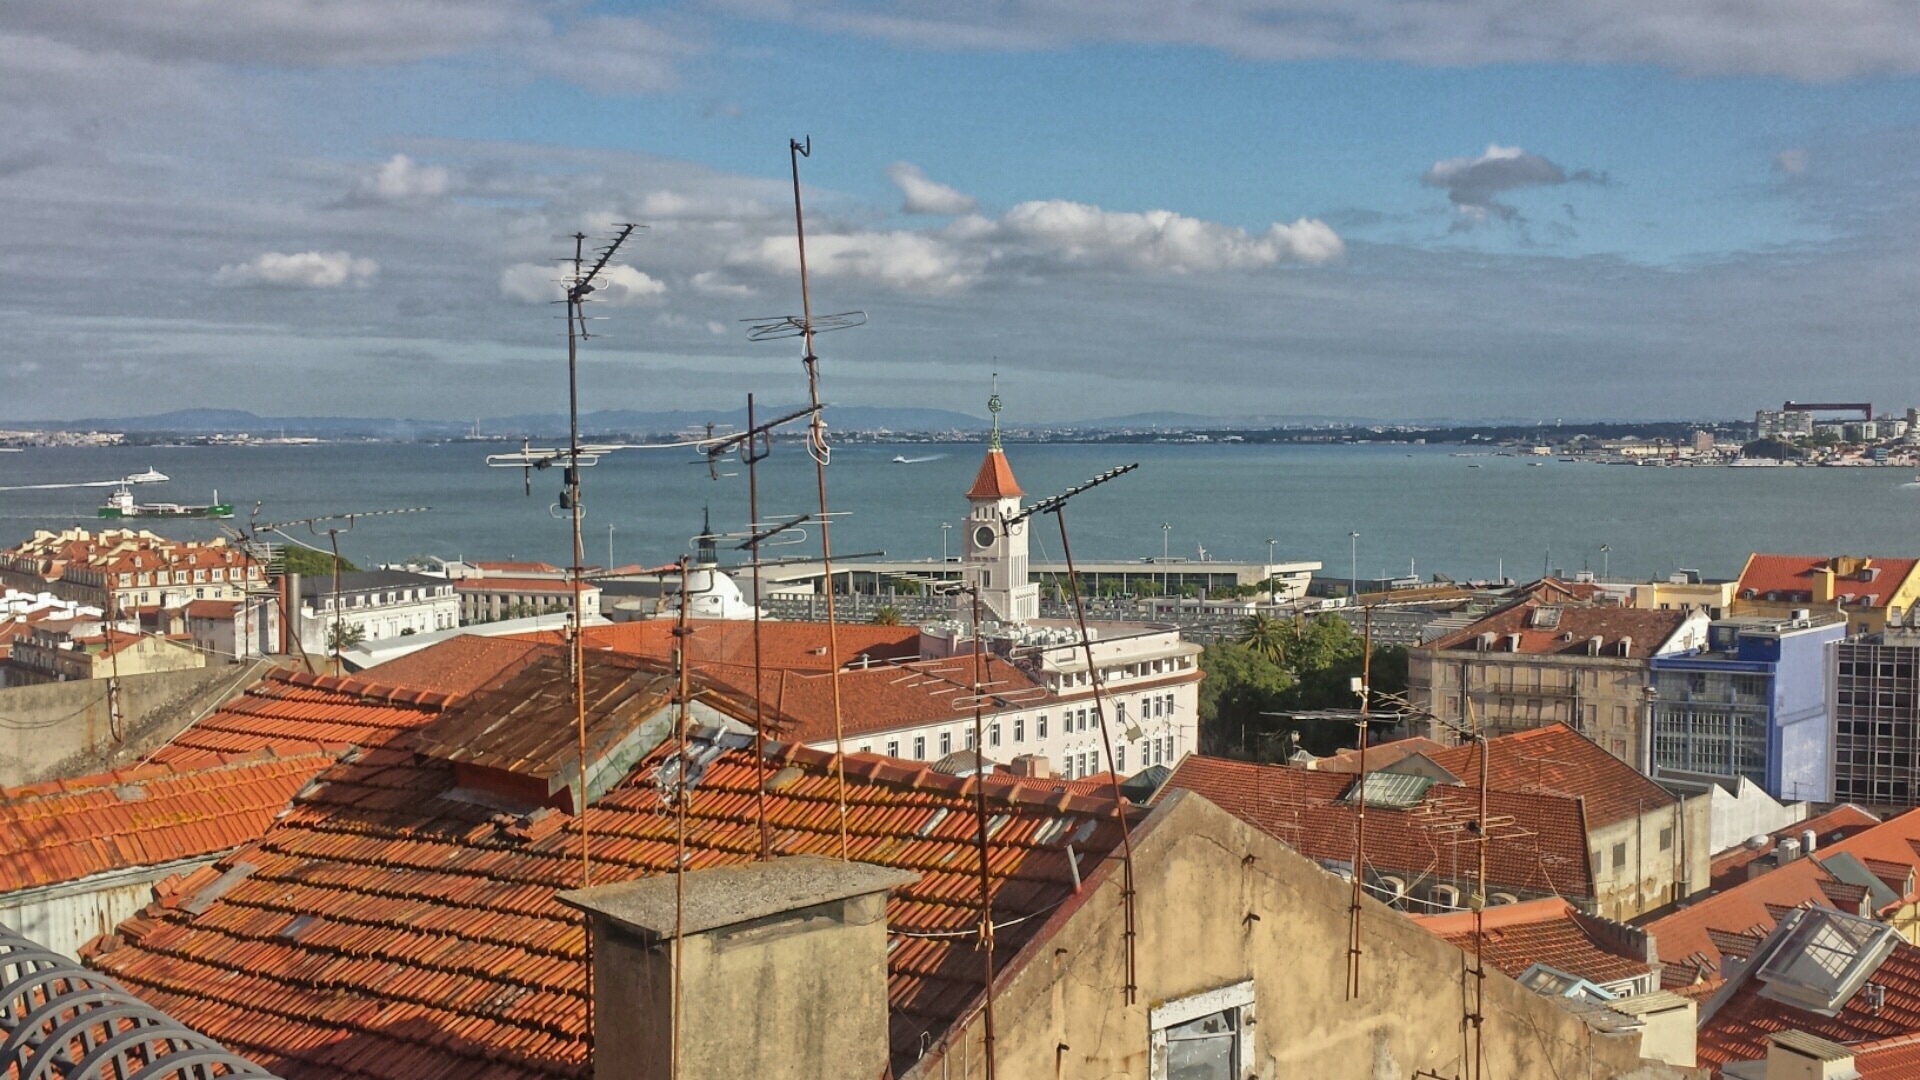 Miradouro de Santa Catarina, Lisbonne, District de  Lisbonne, Portugal